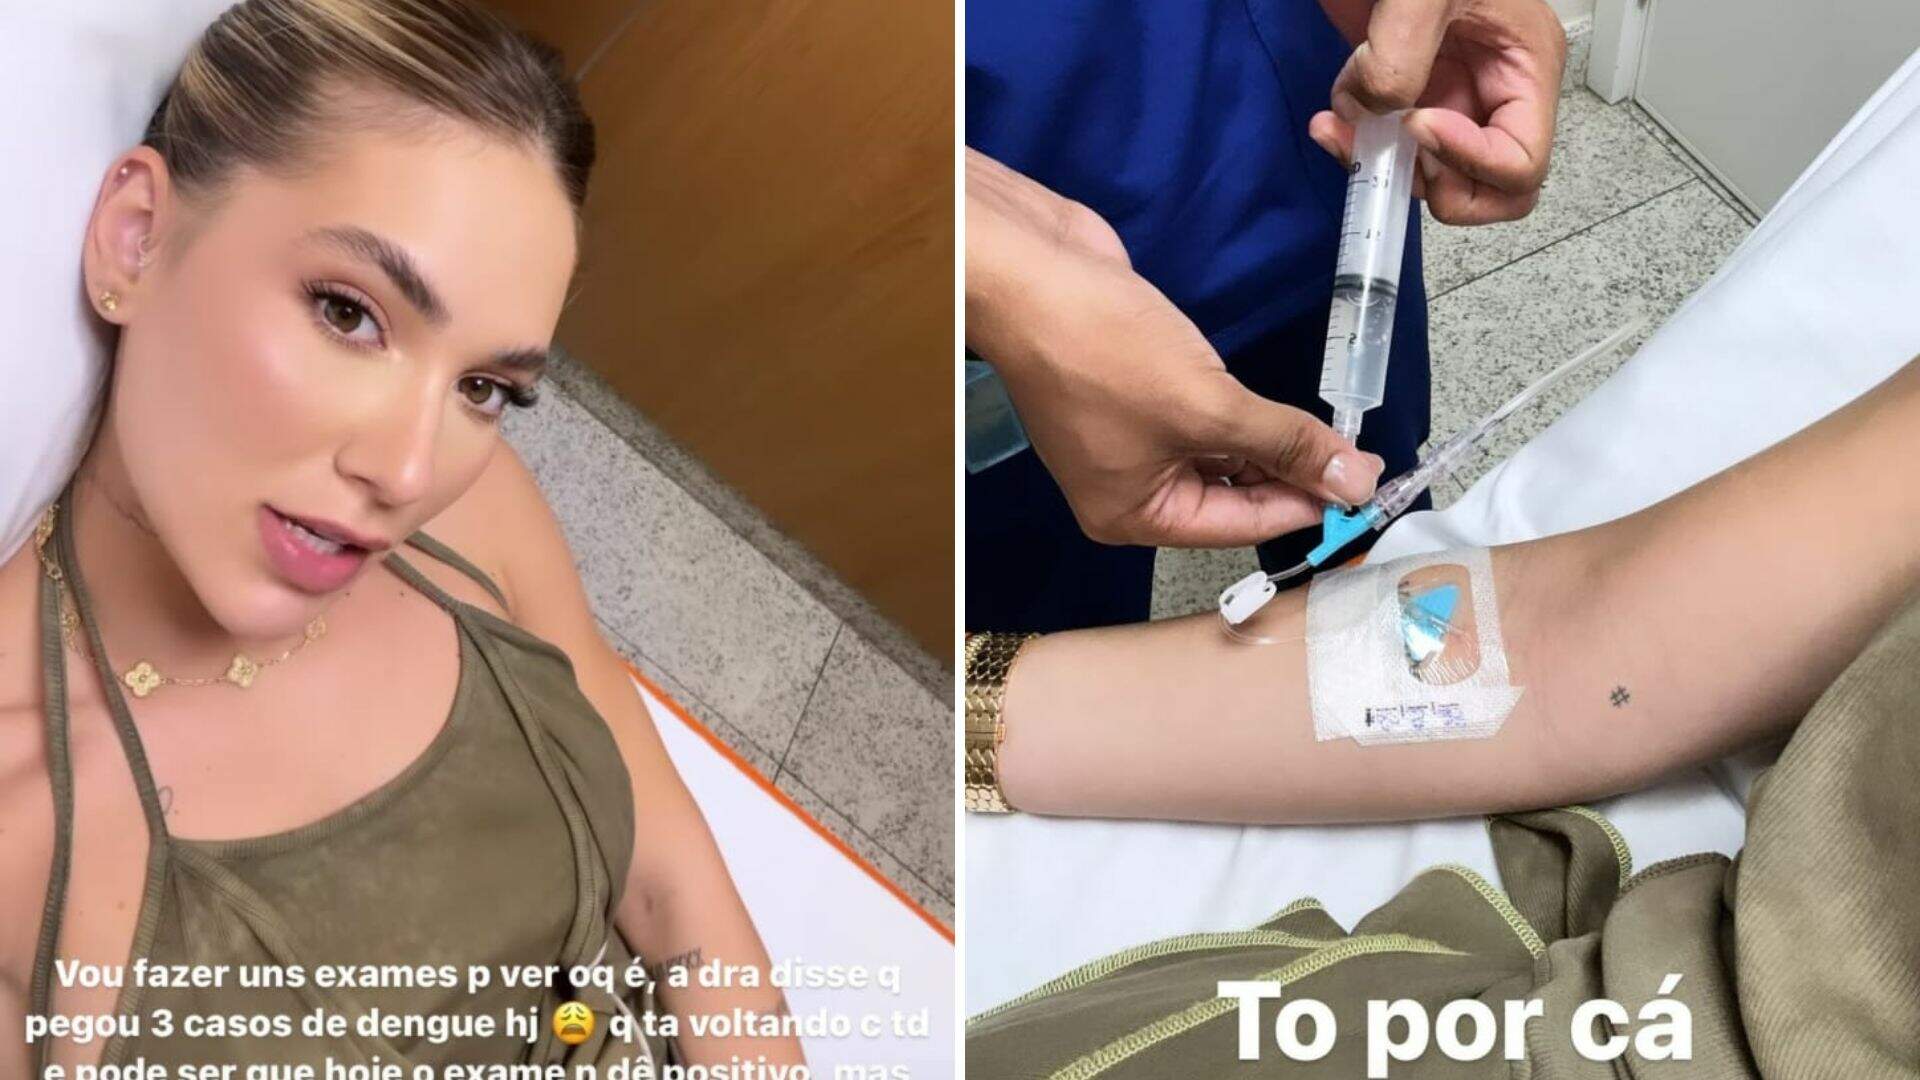 Virgínia Fonseca preocupa fãs ao aparecer no hospital: “Dor que não passa” - Metropolitana FM